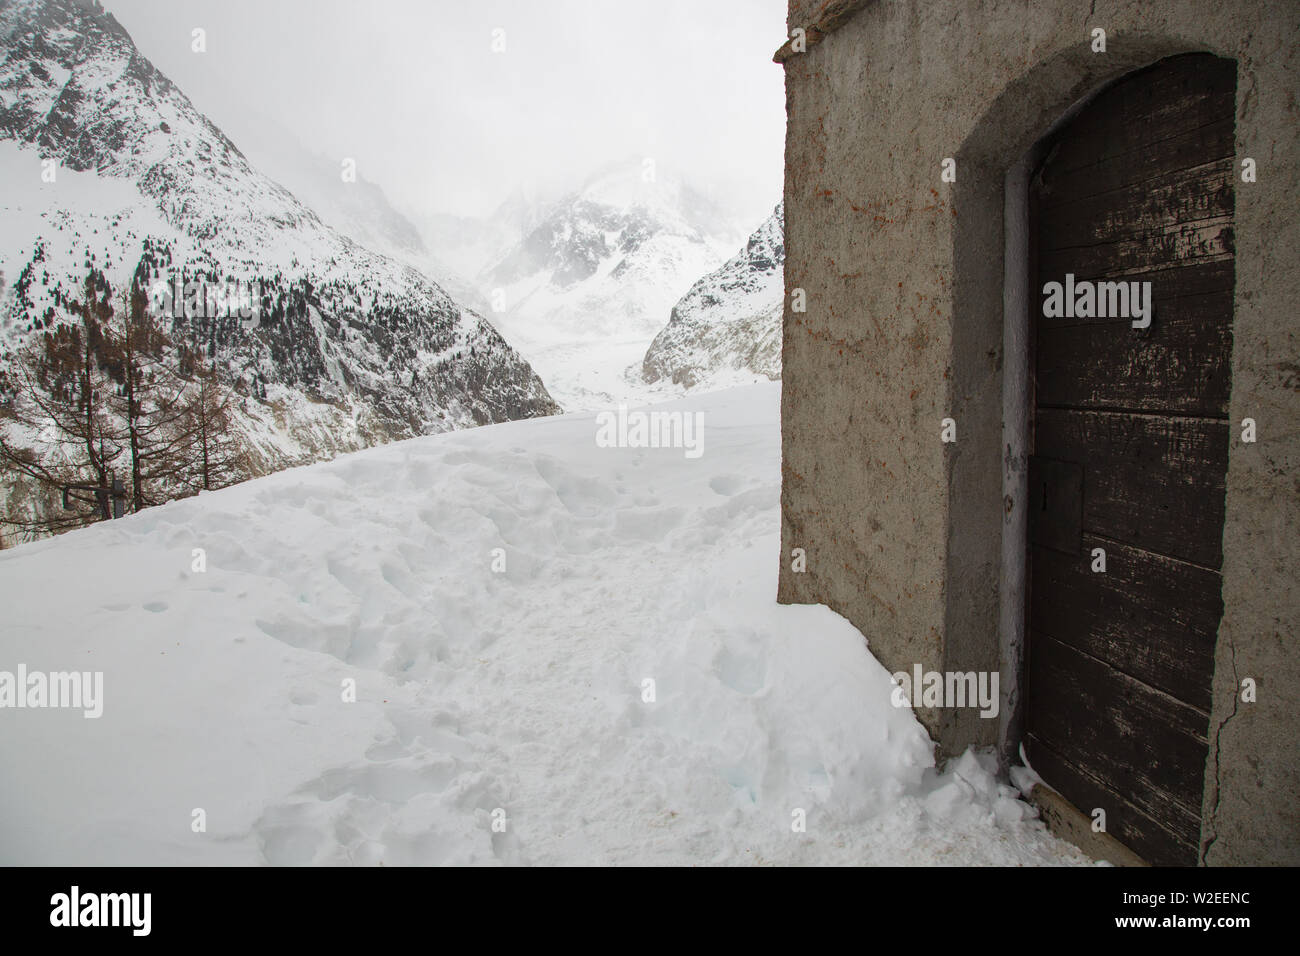 Rifugio alpino in Mer de Glace valle sotto il massiccio del Monte Bianco in francese Alsp Foto Stock